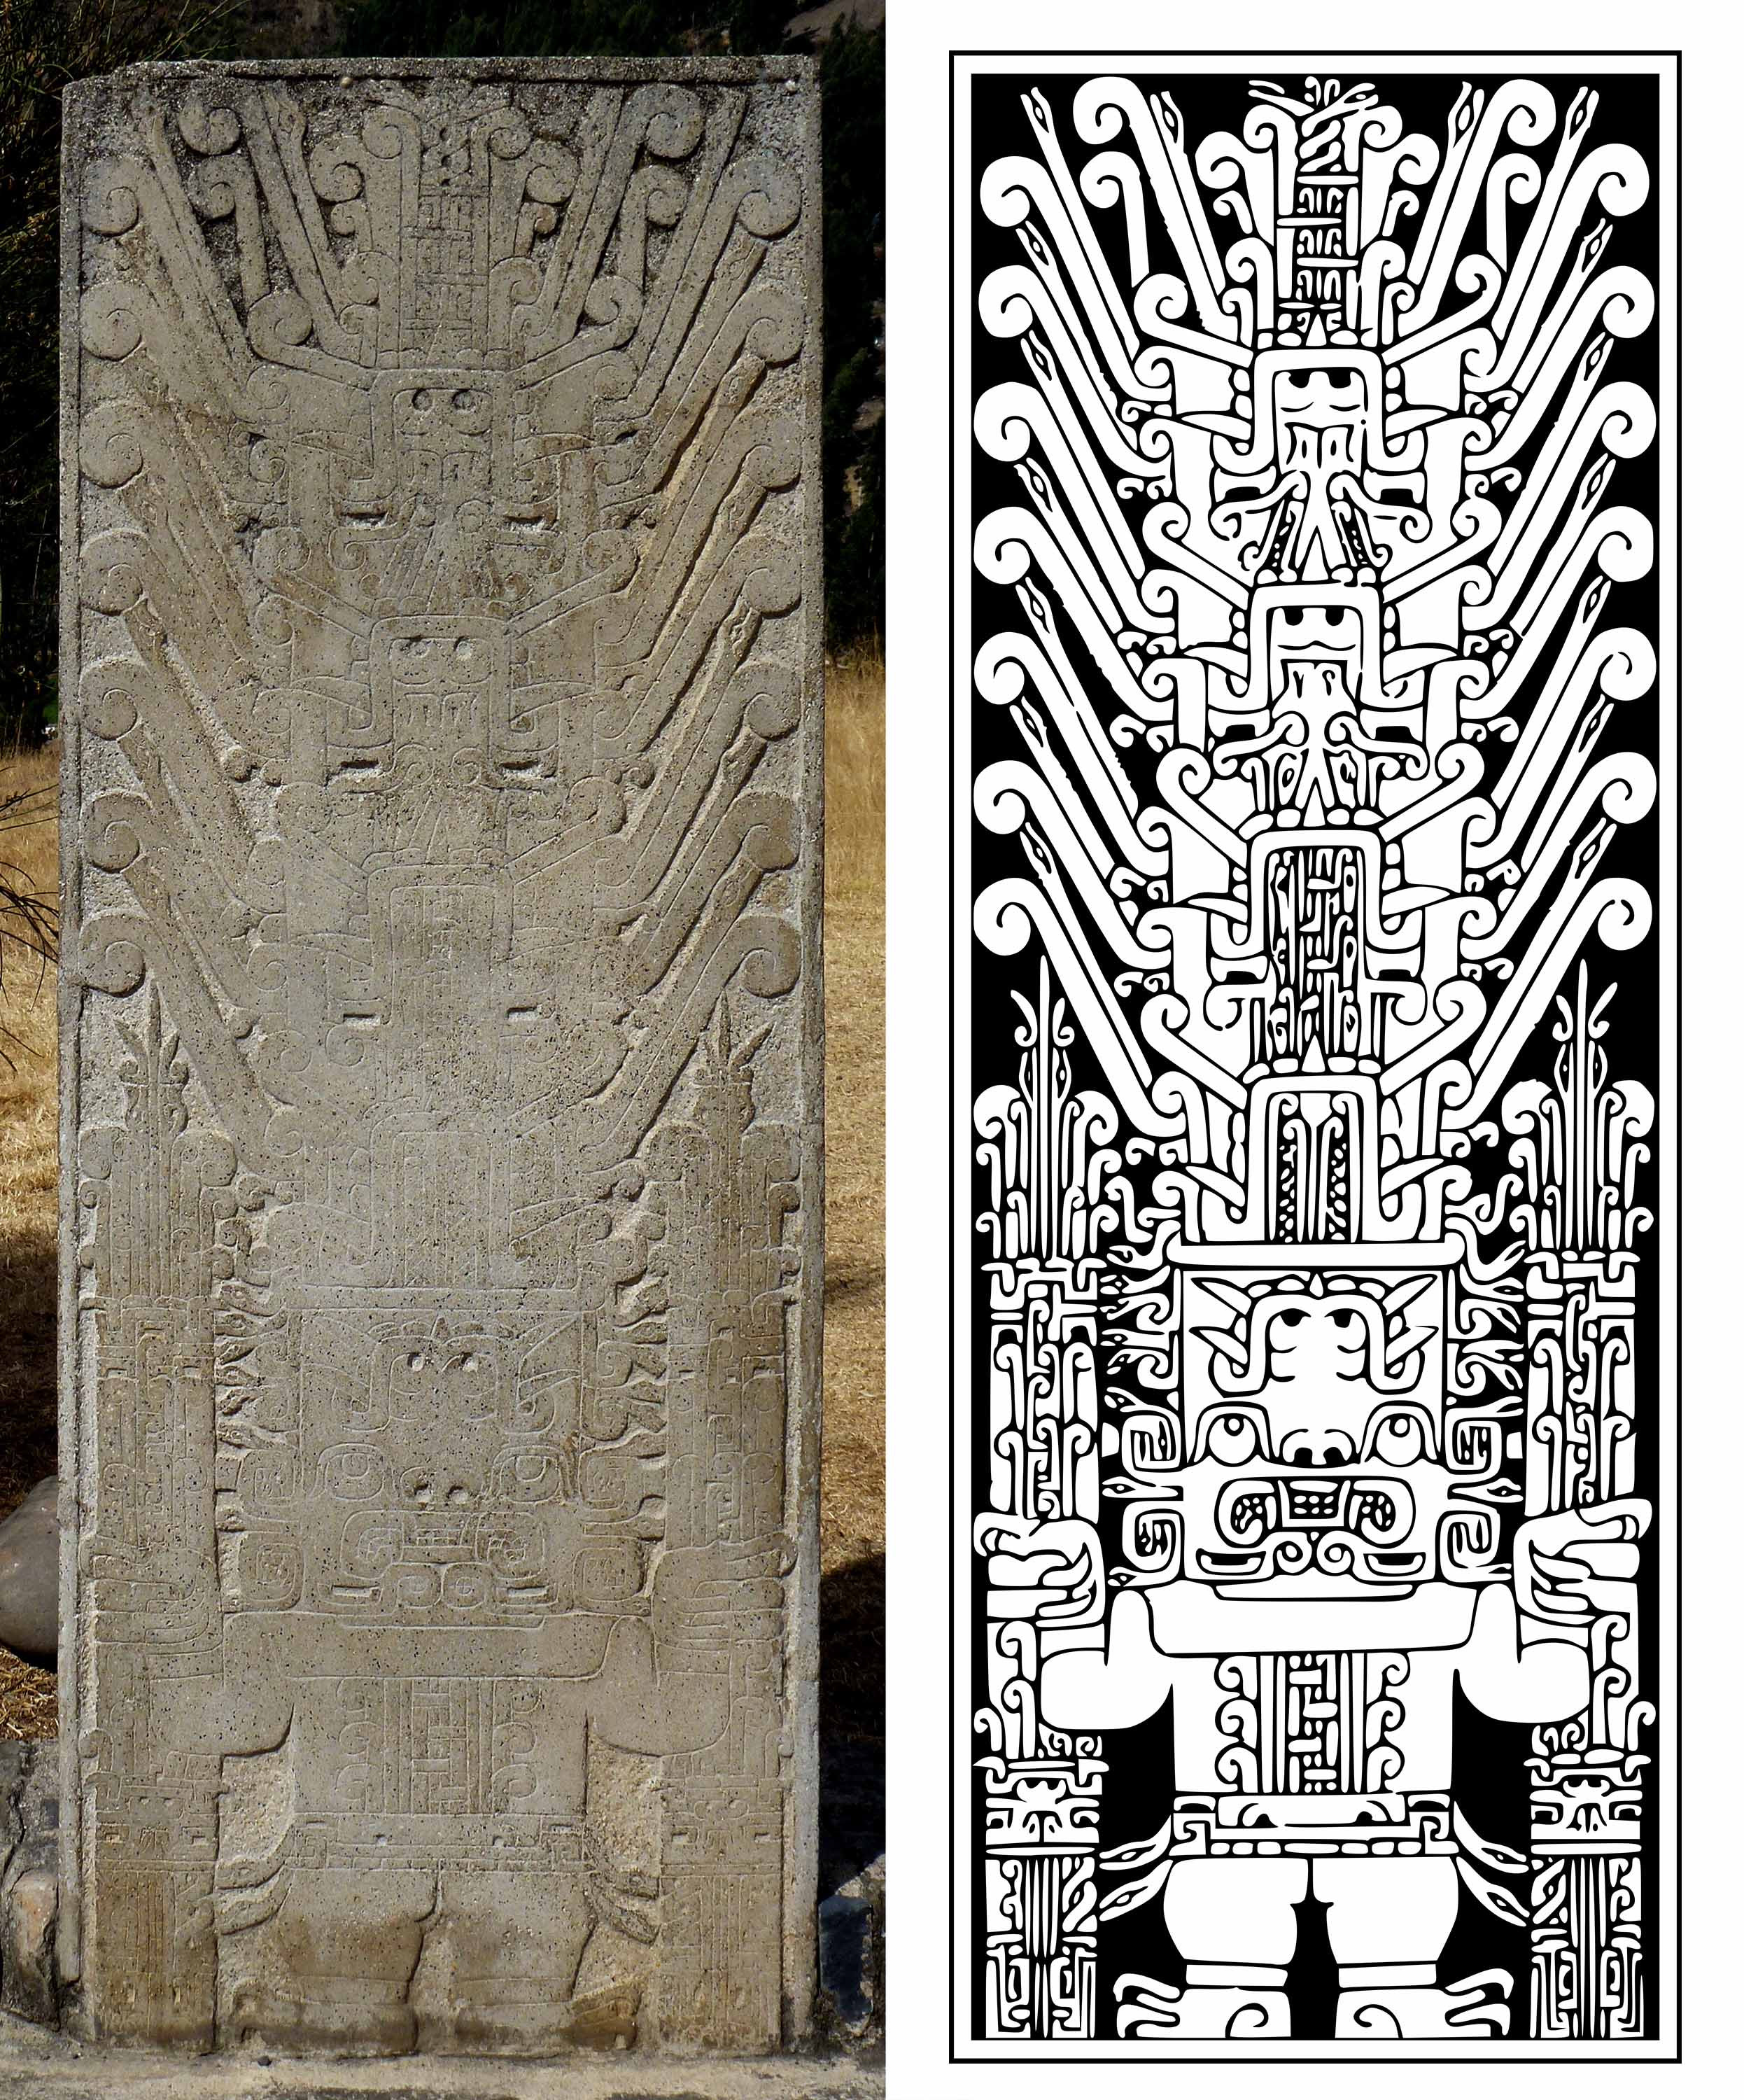 Left: the Raimondi Stele, c. 900-200 B.C.E., Chavín culture, Peru (Museo Nacional de Arqueología Antropología e Historia del Peru, photo: Taco Witte, CC BY 2.0). Right: Line drawing of the Raimondi Stele (source: Tomato356, CC BY-SA 3.0)